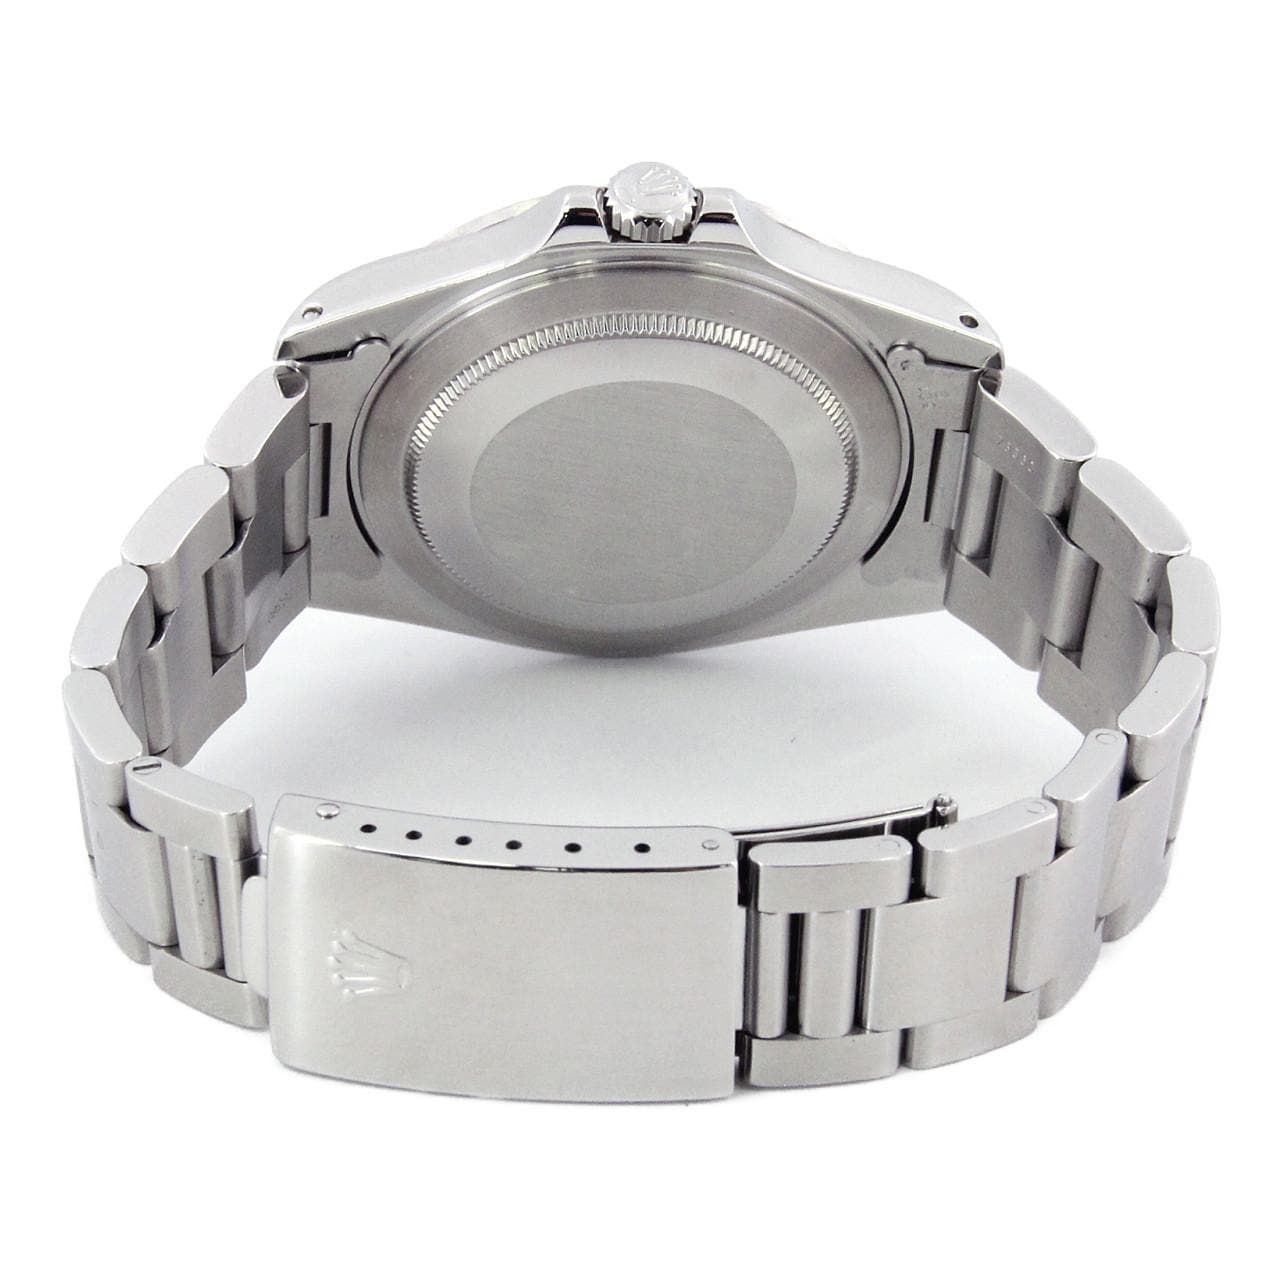 【保証書つき】ロレックス エクスプローラー2　ギャラ付き 自動巻き 腕時計 ステンレススチール SS ホワイト K番(2001年) 2002年購入 16570 メンズ 40802053476【アラモード】